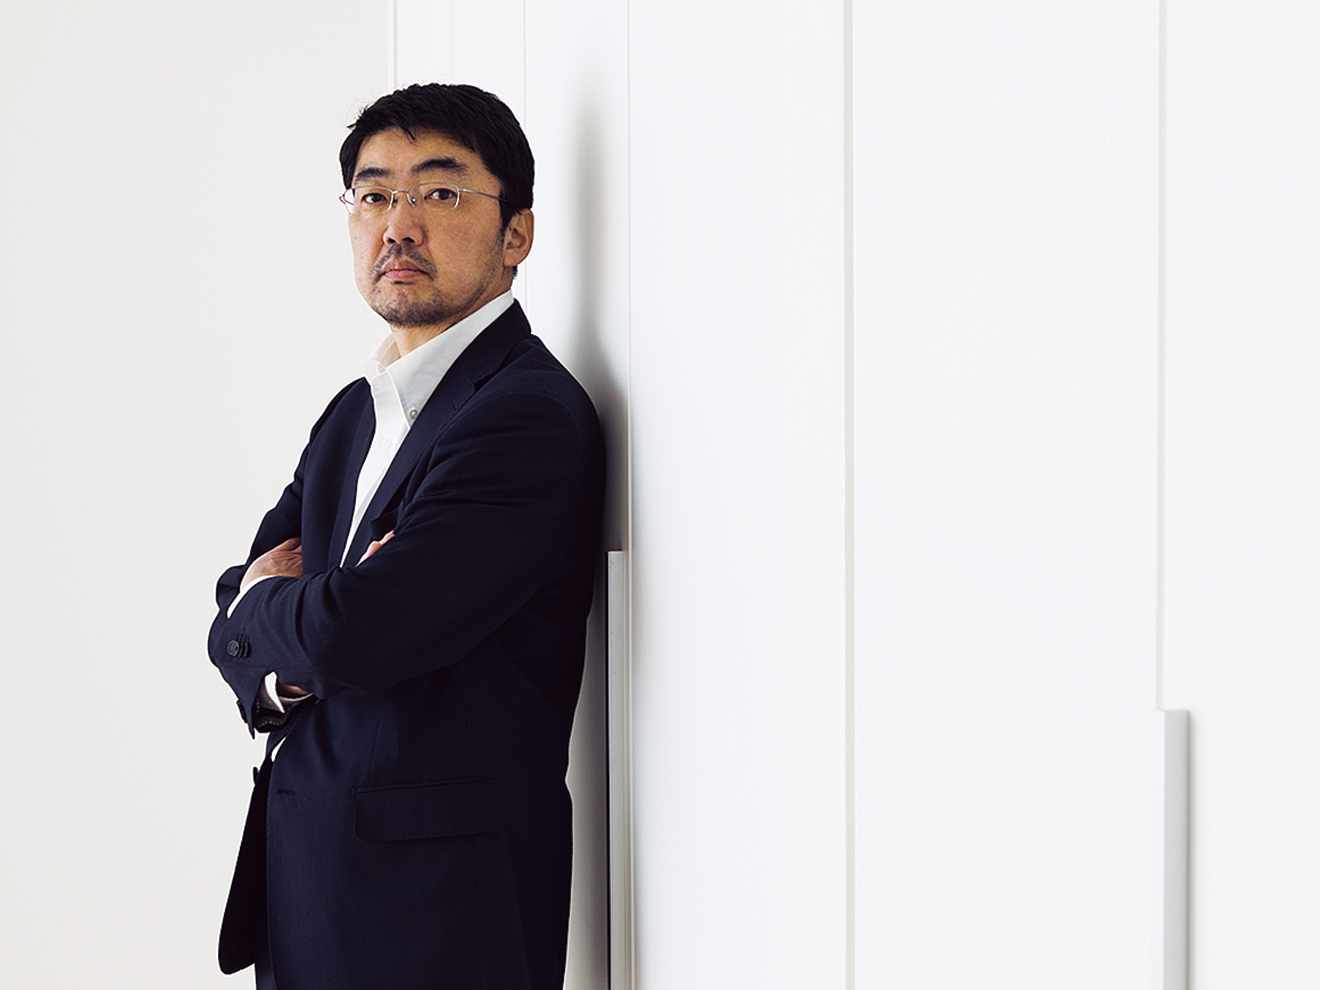 「奥沢光庭」のプロデューサー・河部吉孝氏。デザイン性と経済性の真のバランスを追求し、用地仕入れ、企画設計、広告展開まで全てをプロデュースする。